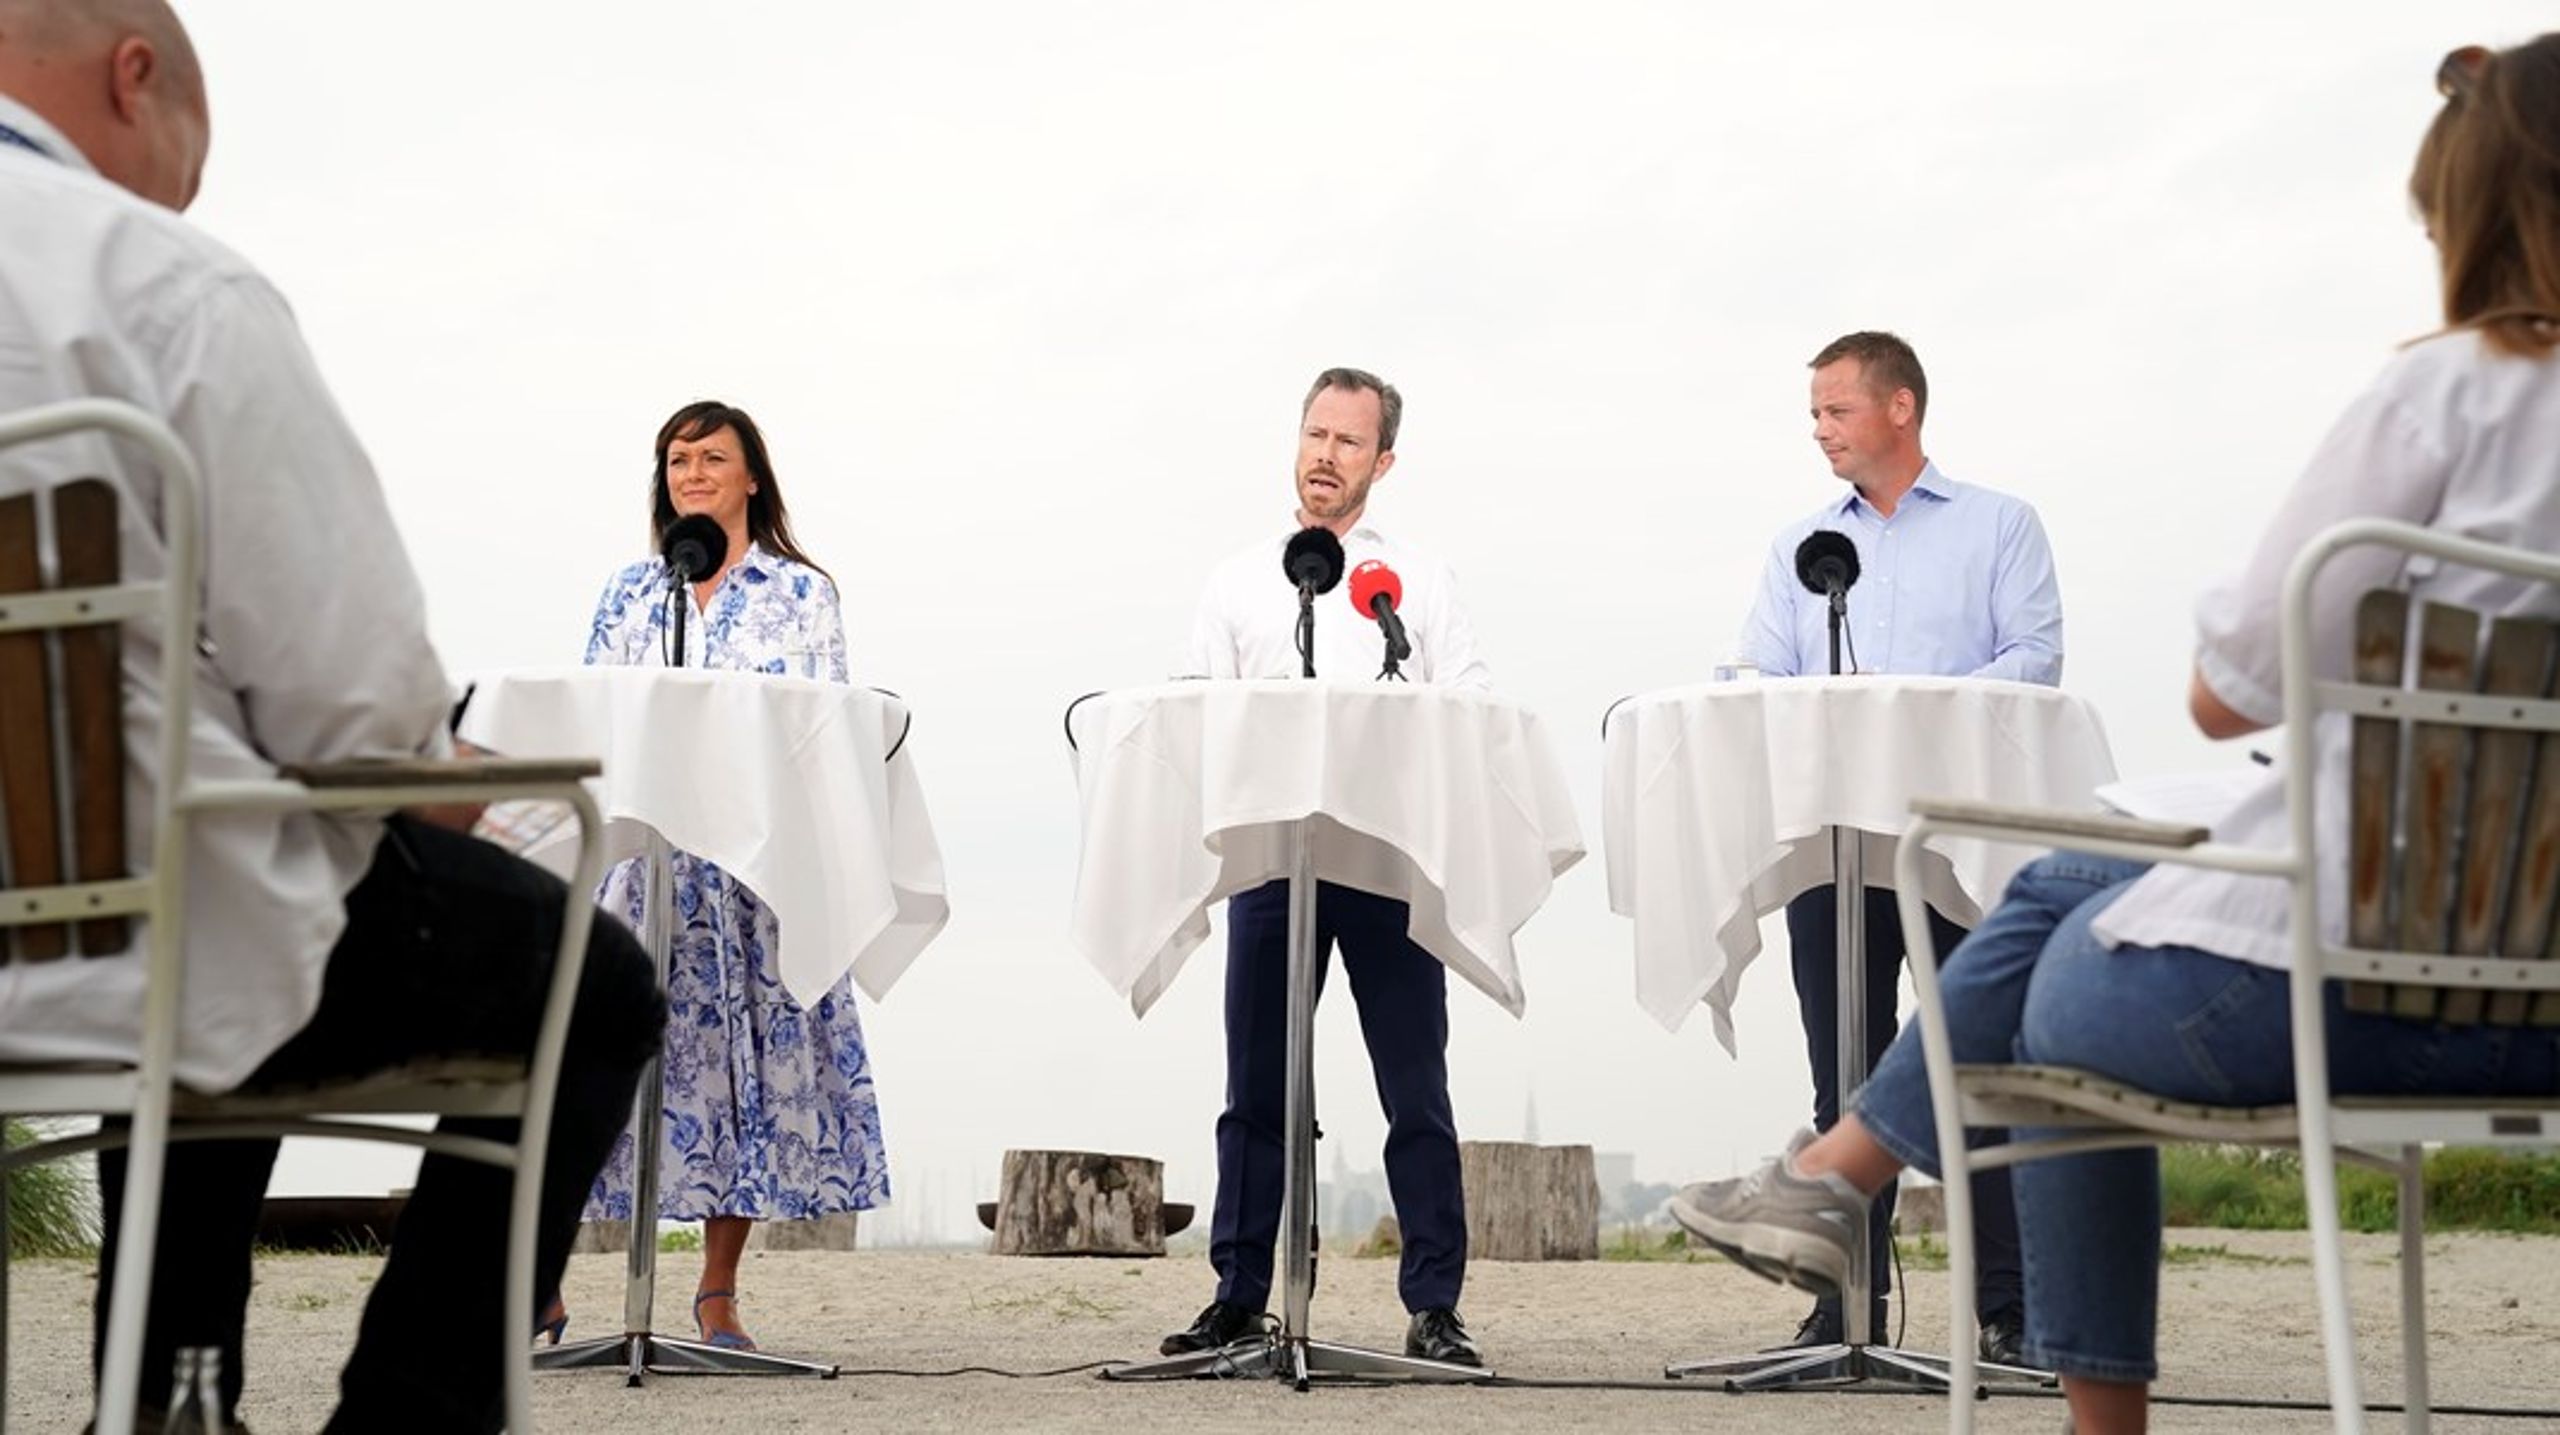 Minimum 80 procent af nyopslåede stillinger i det offentlige skal være fuldtidsansættelser, mener Venstre, der i dag holdt pressemøde i kølvandet på partiets sommergruppemøde.